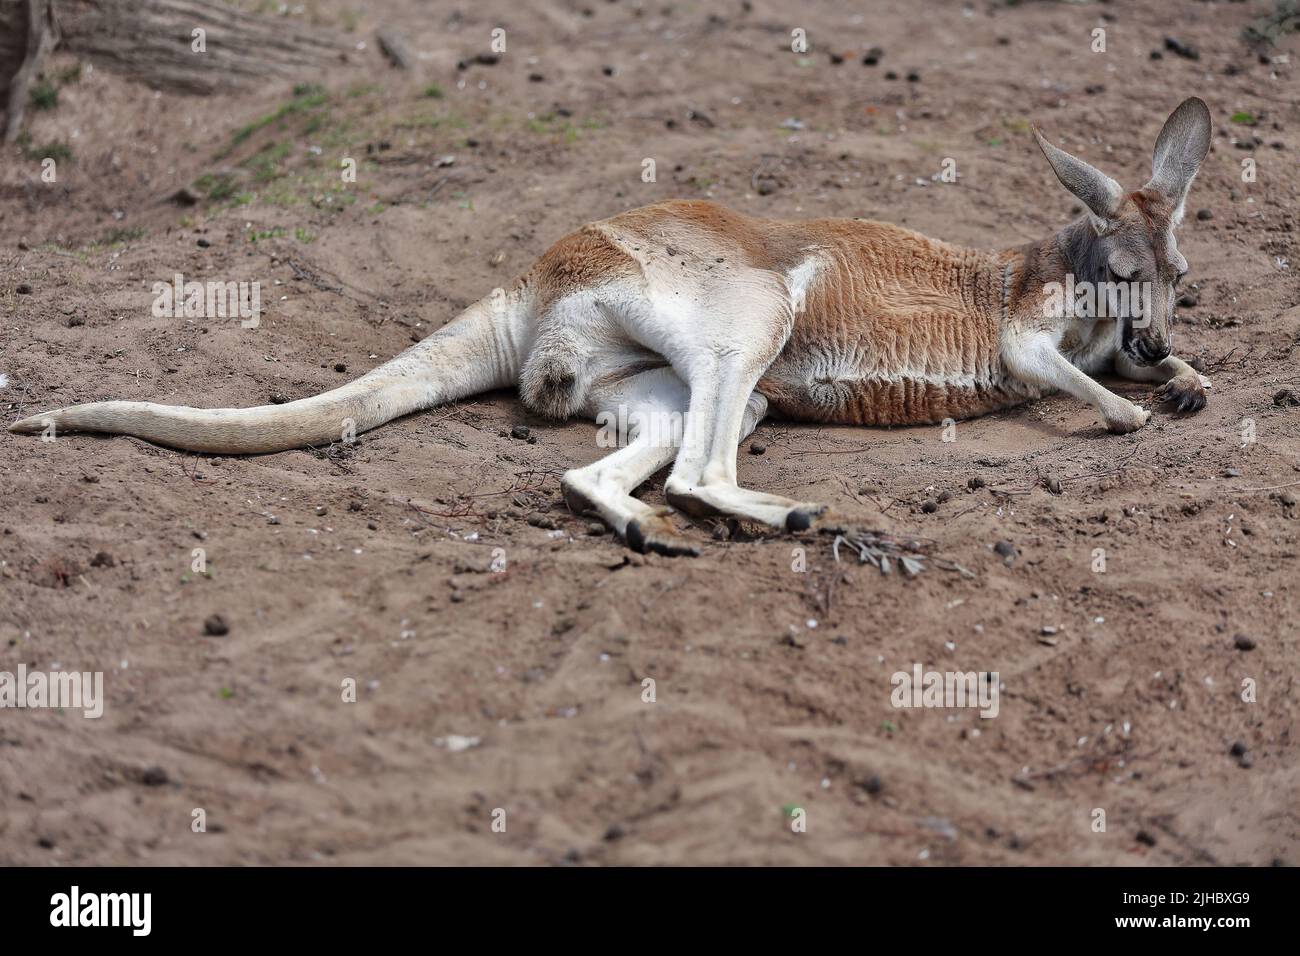 076 Hombre canguro rojo descansando sobre tierra cubierta tierra. Brisbane-Australia. Foto de stock